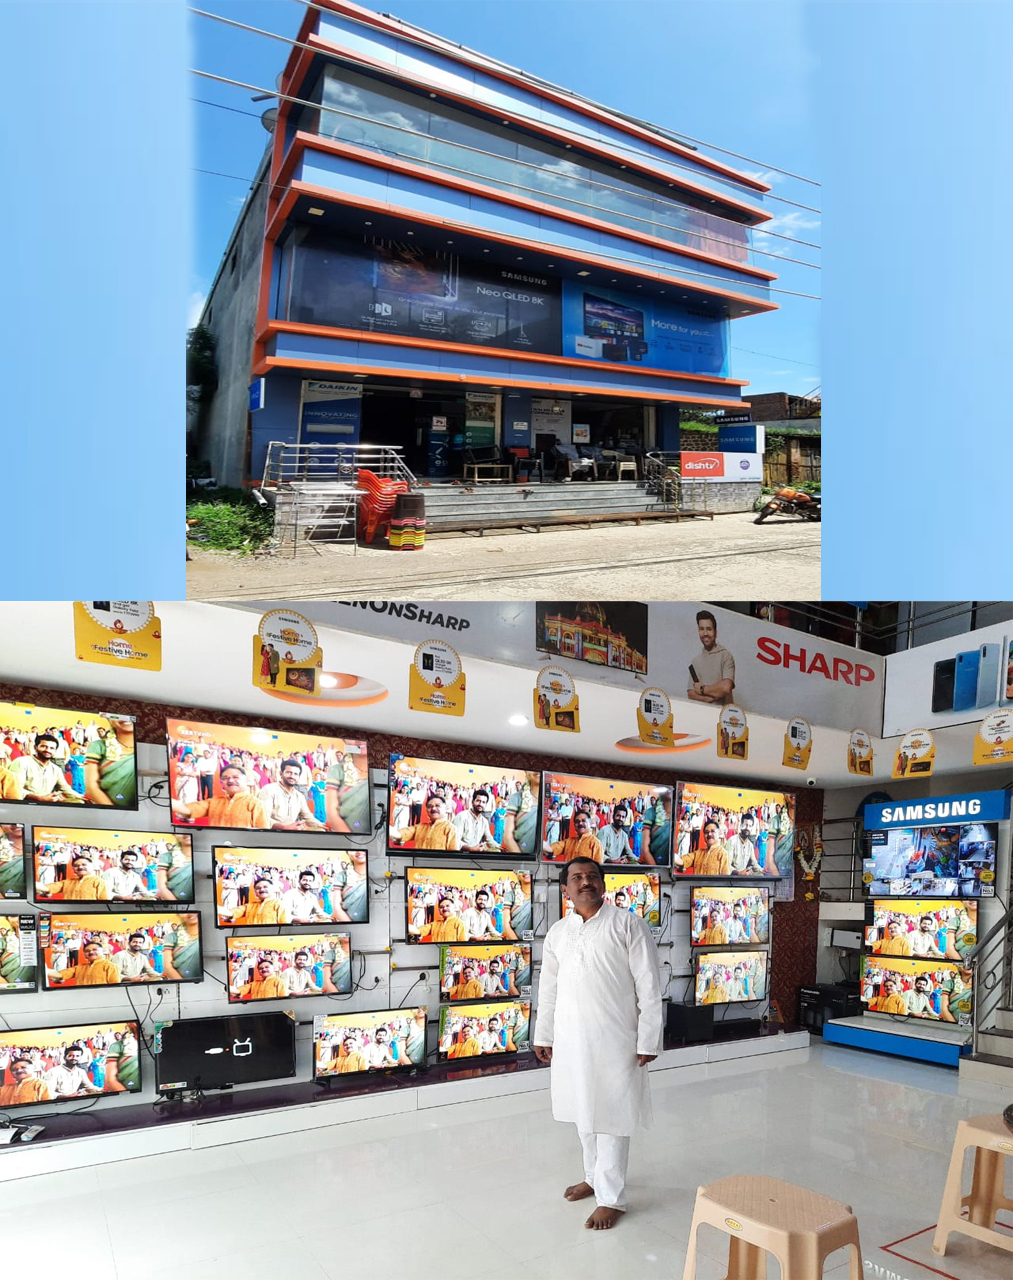 मुळीक इलेक्ट्रॉनिक्स व मोबाईल शॉपी चे केदार फर्निचर व स्टील भांडी सेंटर | SolapurMall.com